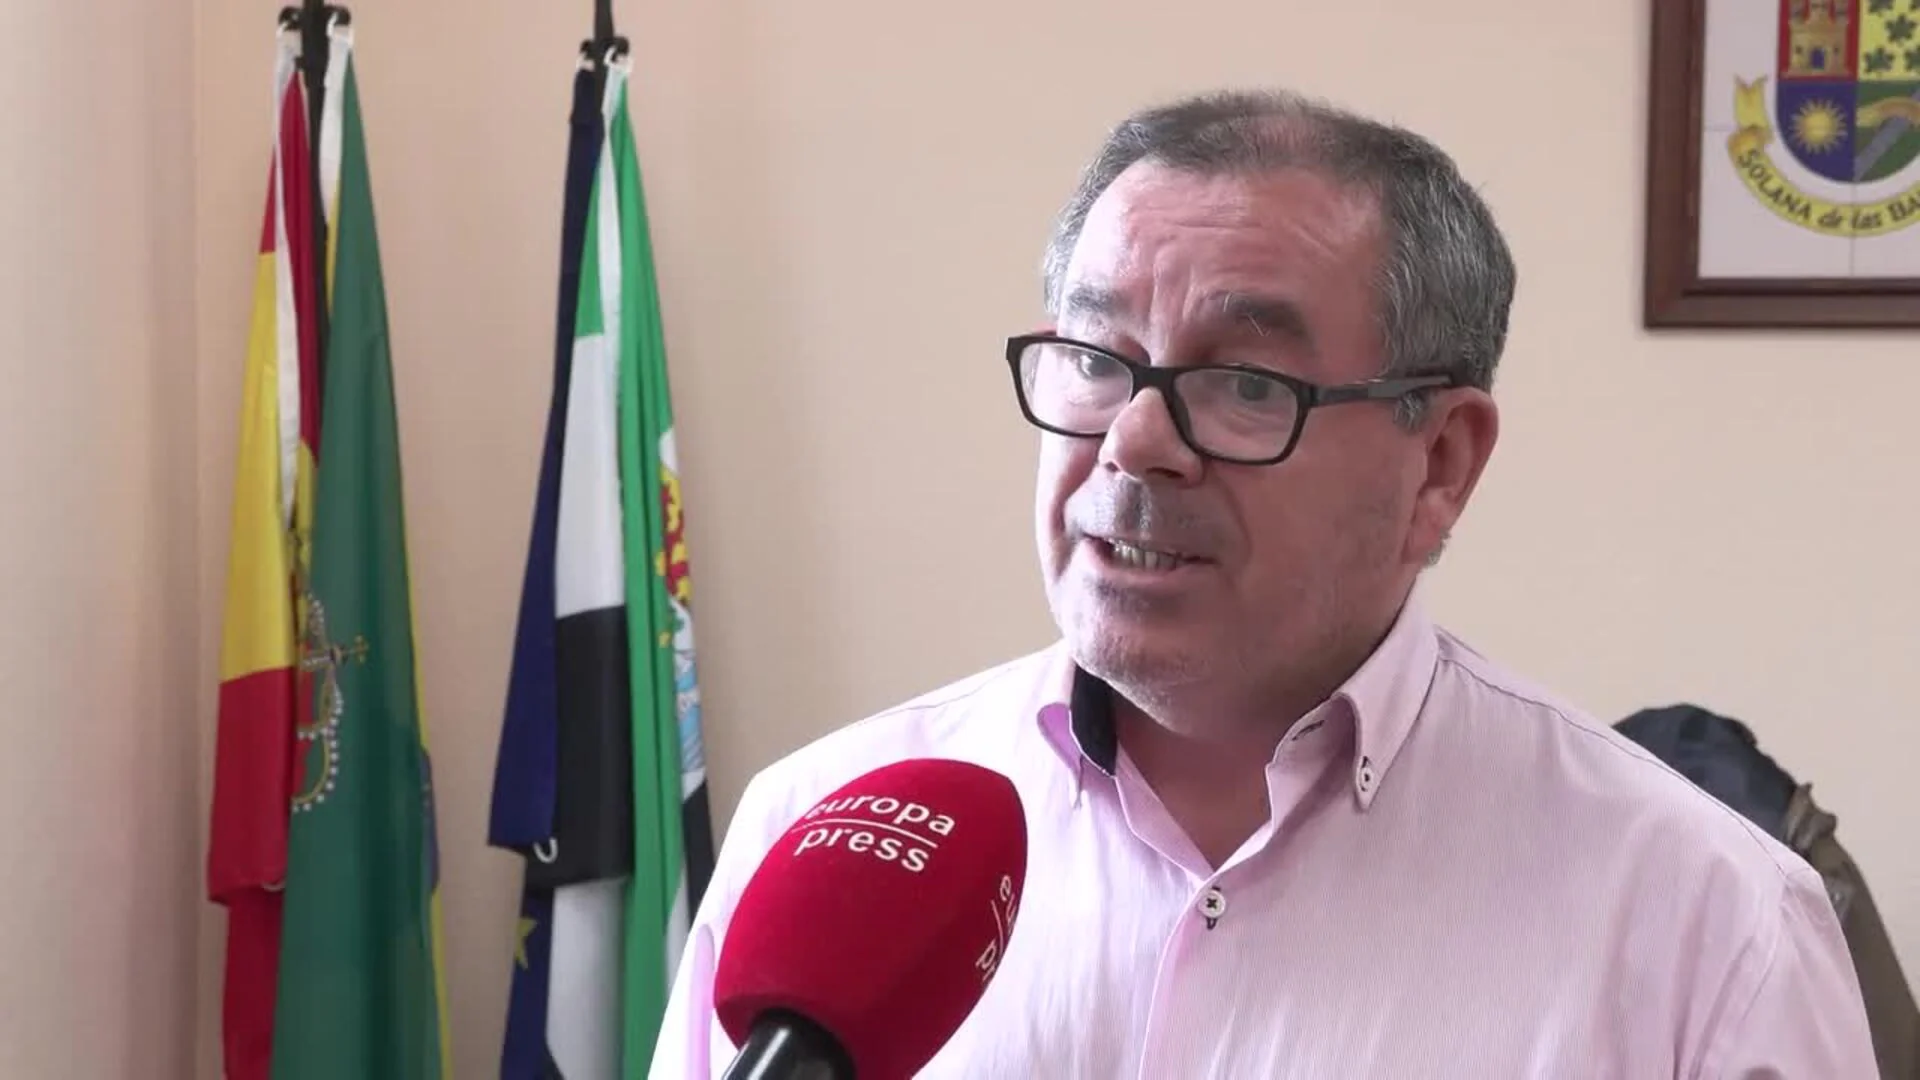 El alcalde de Solana dice que la situación es "insostenible" debido a los "constantes" cortes de luz